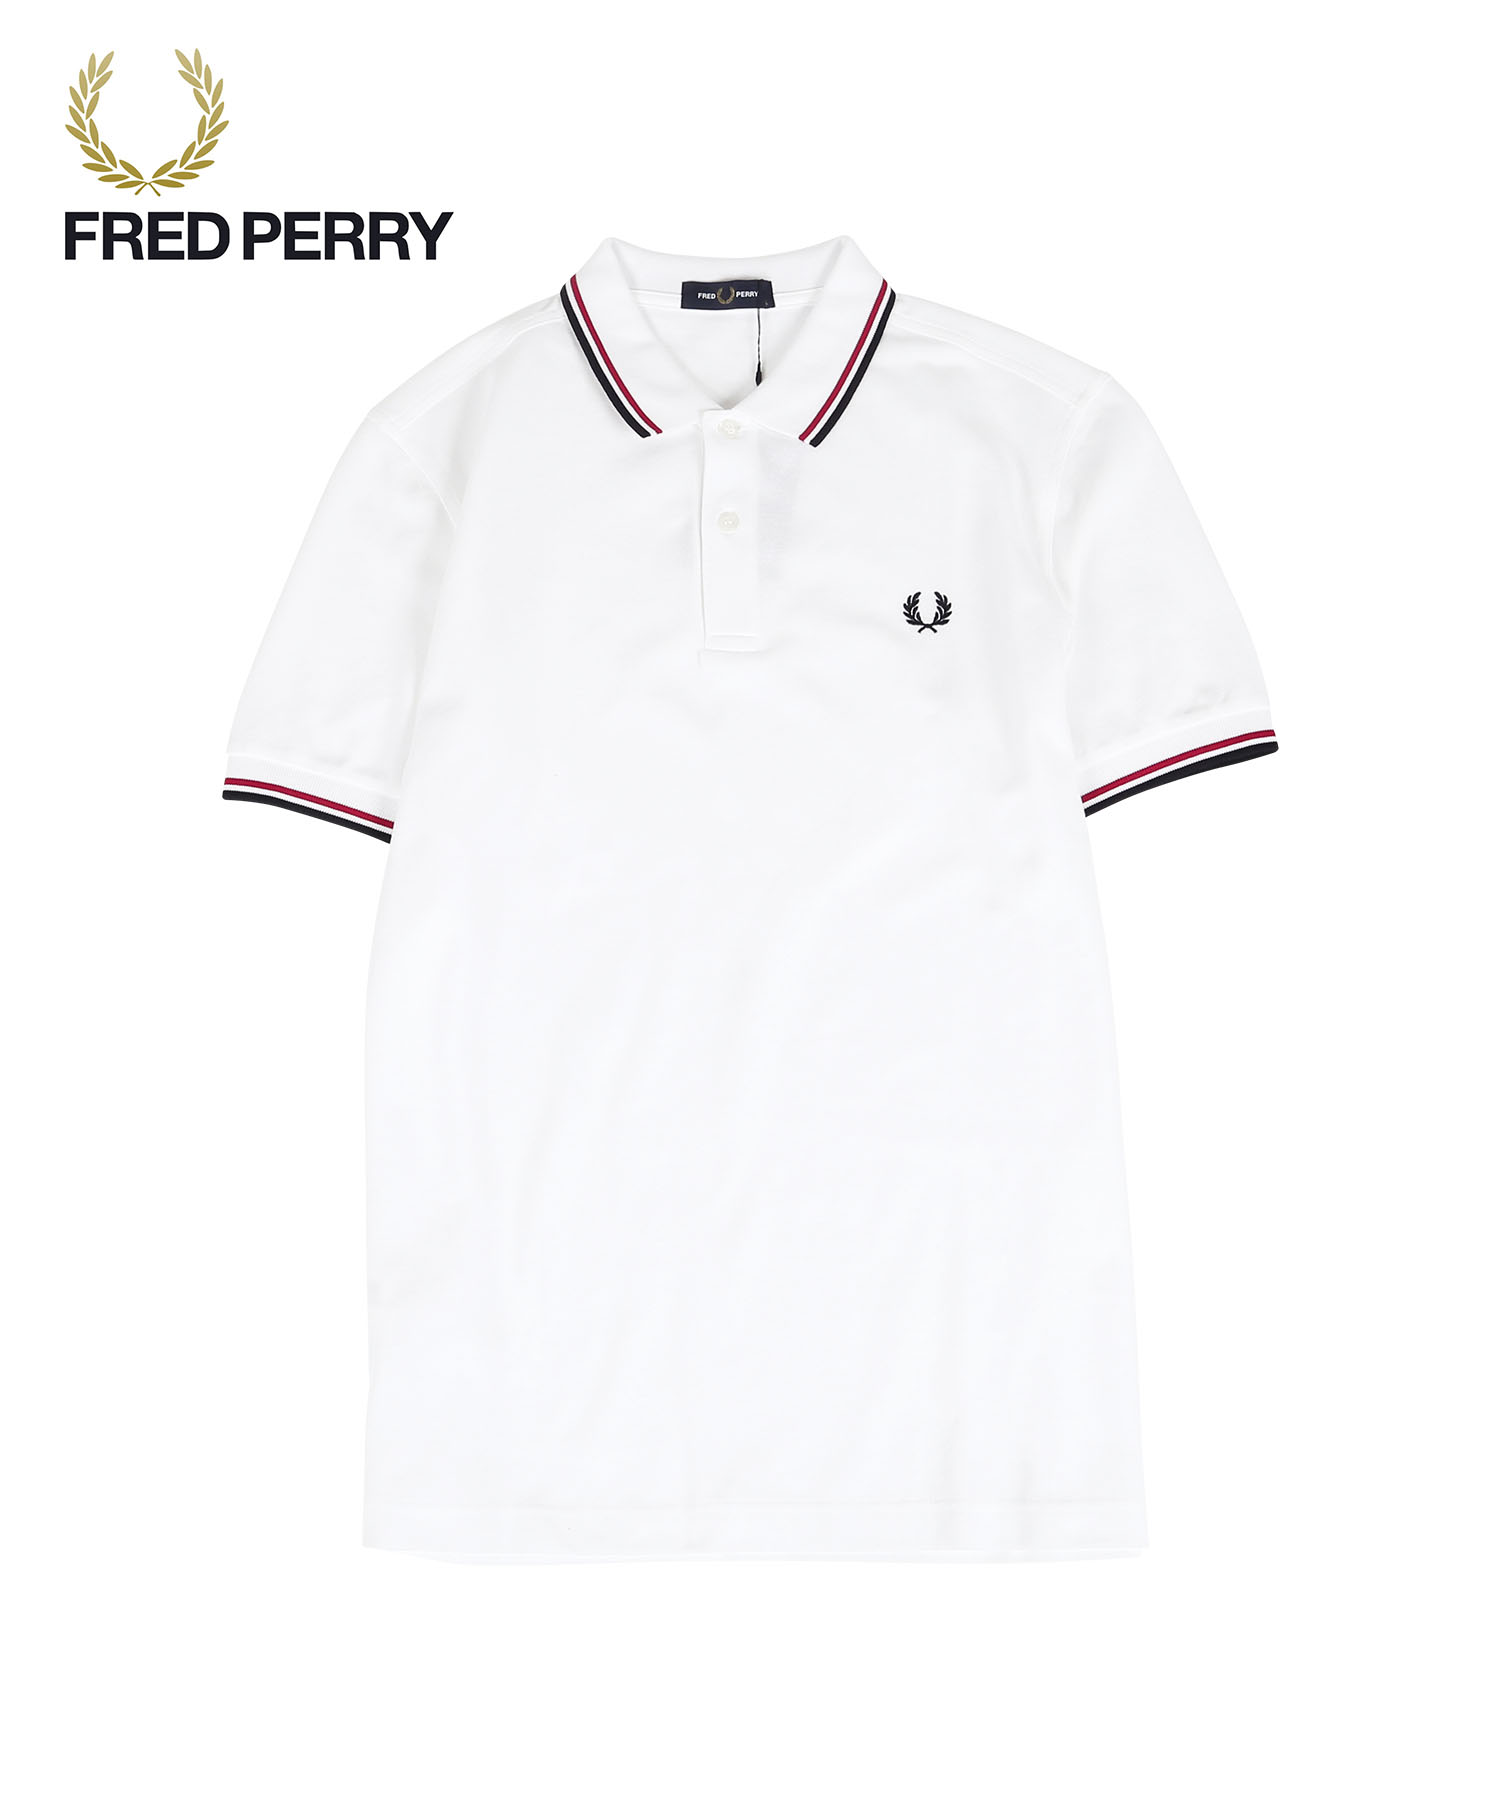 フレッドペリー FRED PERRY ポロシャツ メンズ 紳士 綿100% コットン 